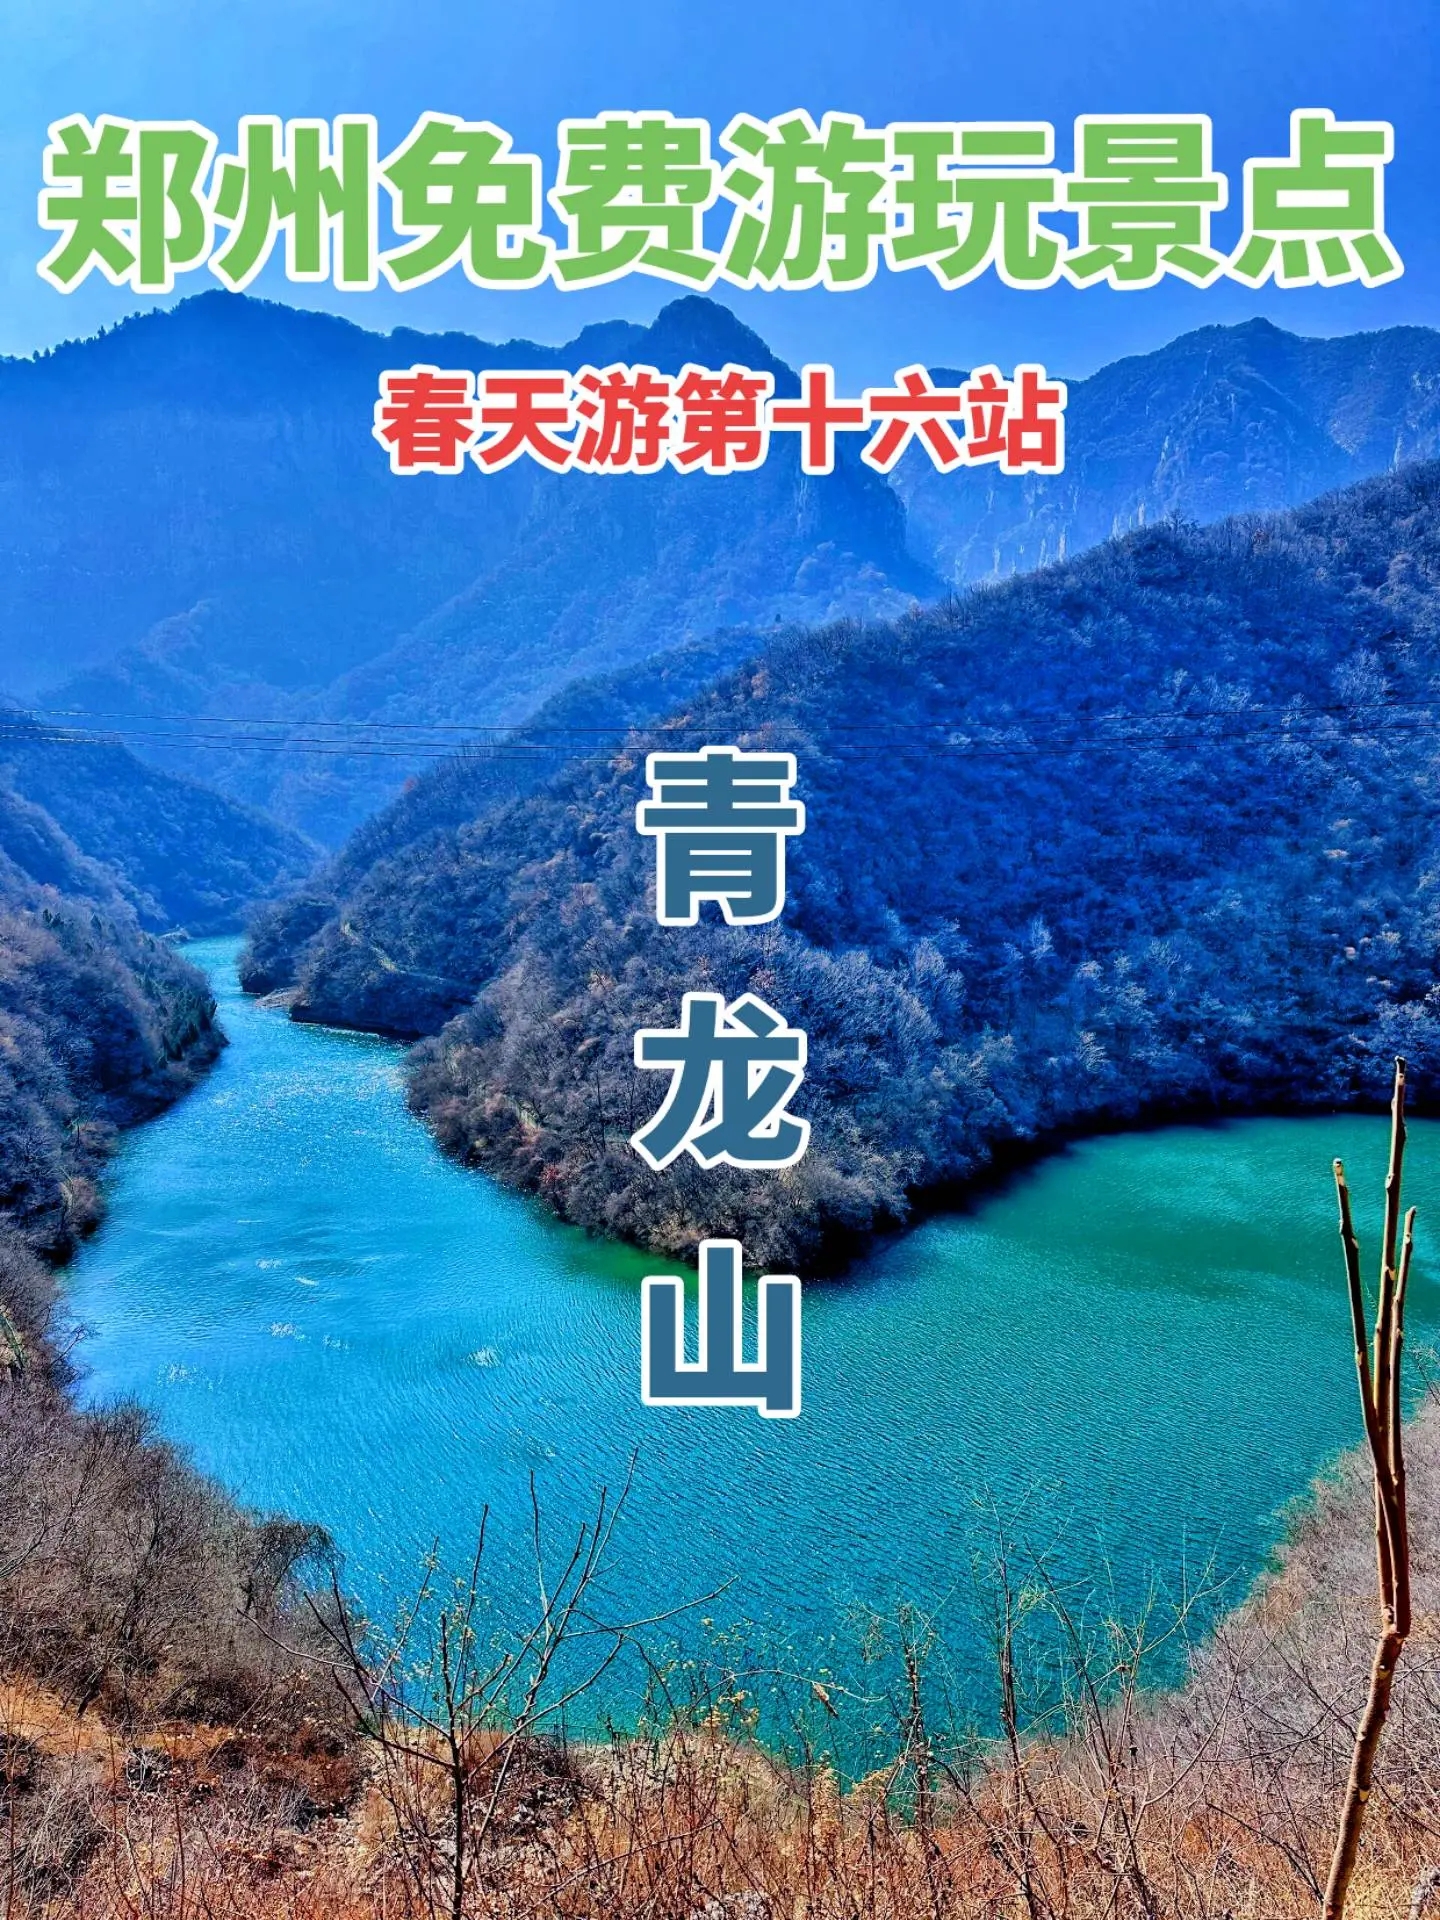 郑州100个免费游玩宝藏景点——青龙山